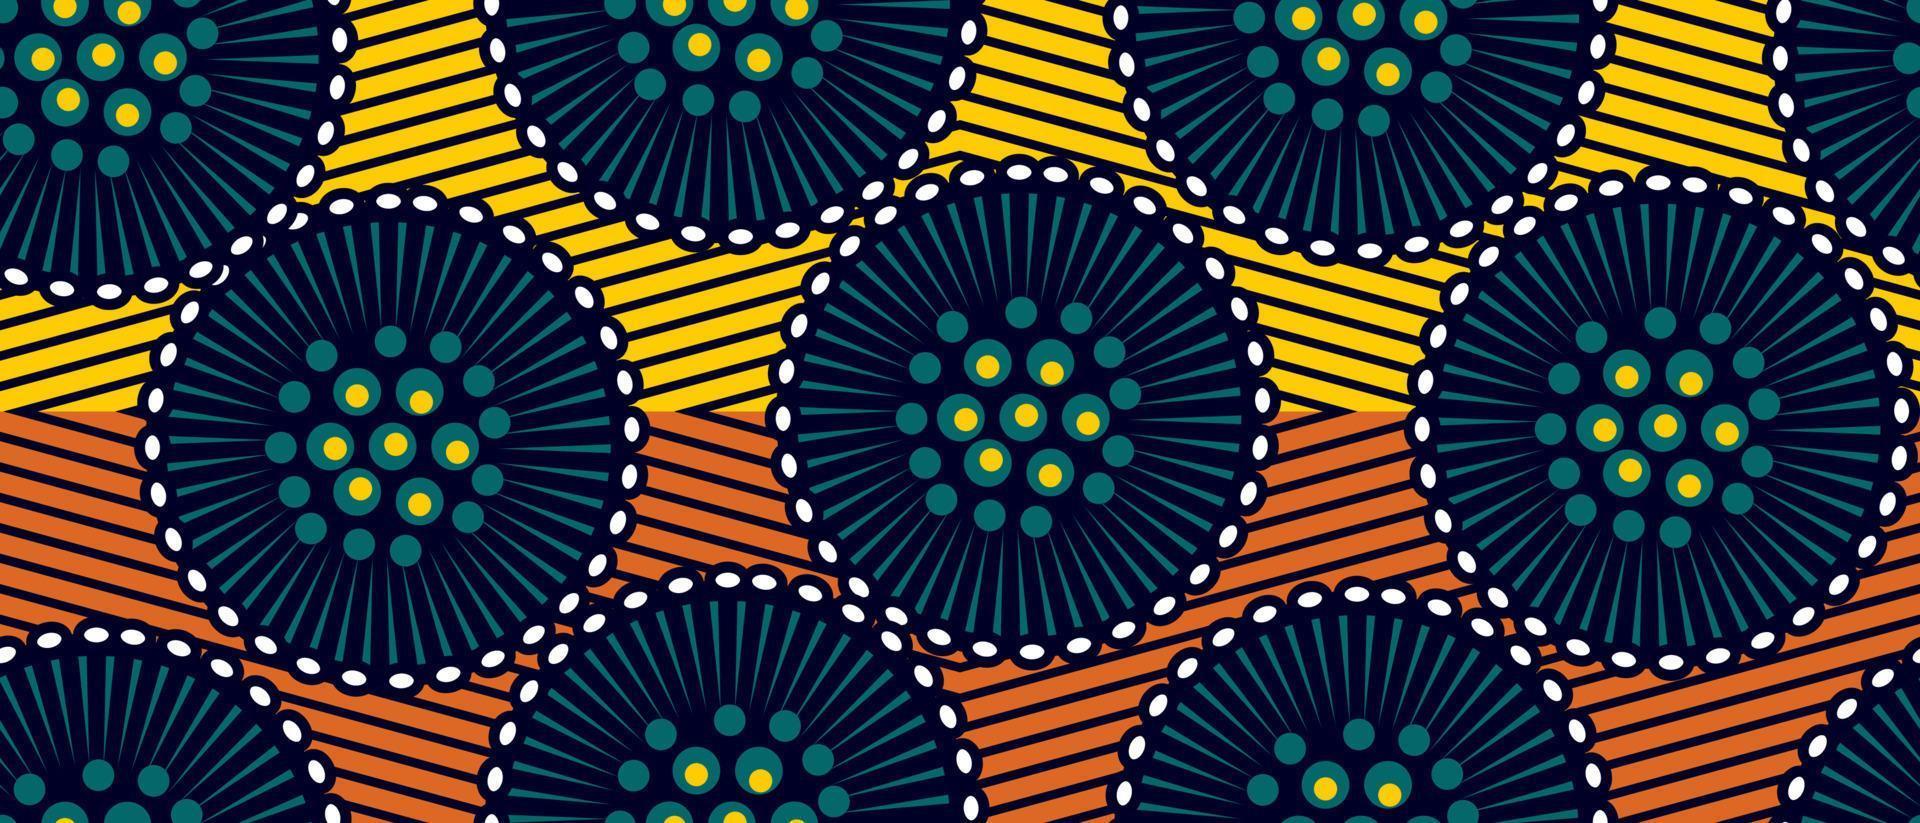 Afrikaanse etnische traditionele patroon. naadloze mooie kitenge, chitenge, nederlandse wasstijl. modevormgeving in kleurrijk. geometrisch abstract motief. algemeen bekend als ankara prints, afrikaanse wax prints. vector